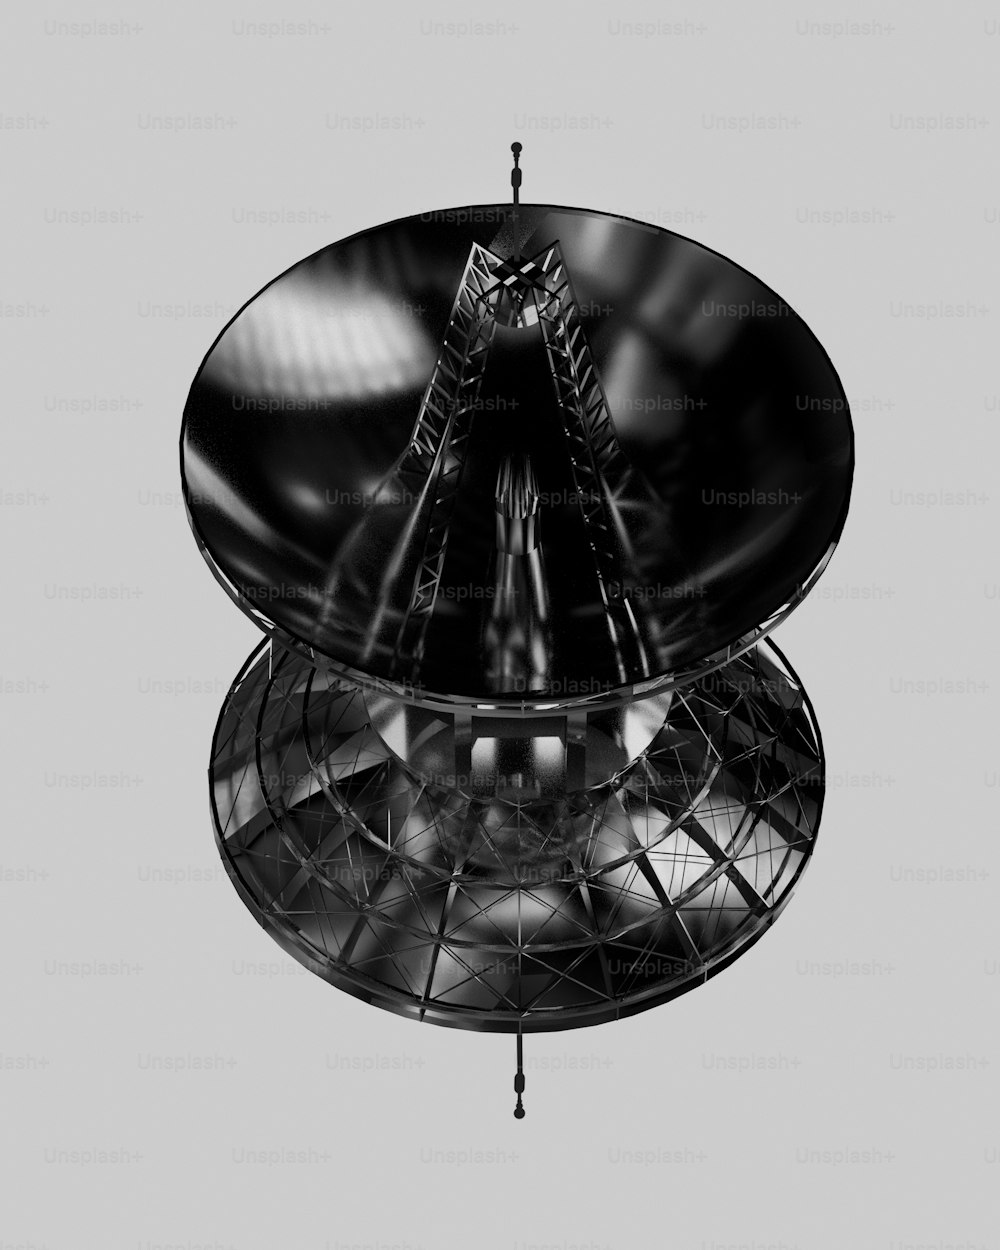 una foto in bianco e nero di una parabola satellitare